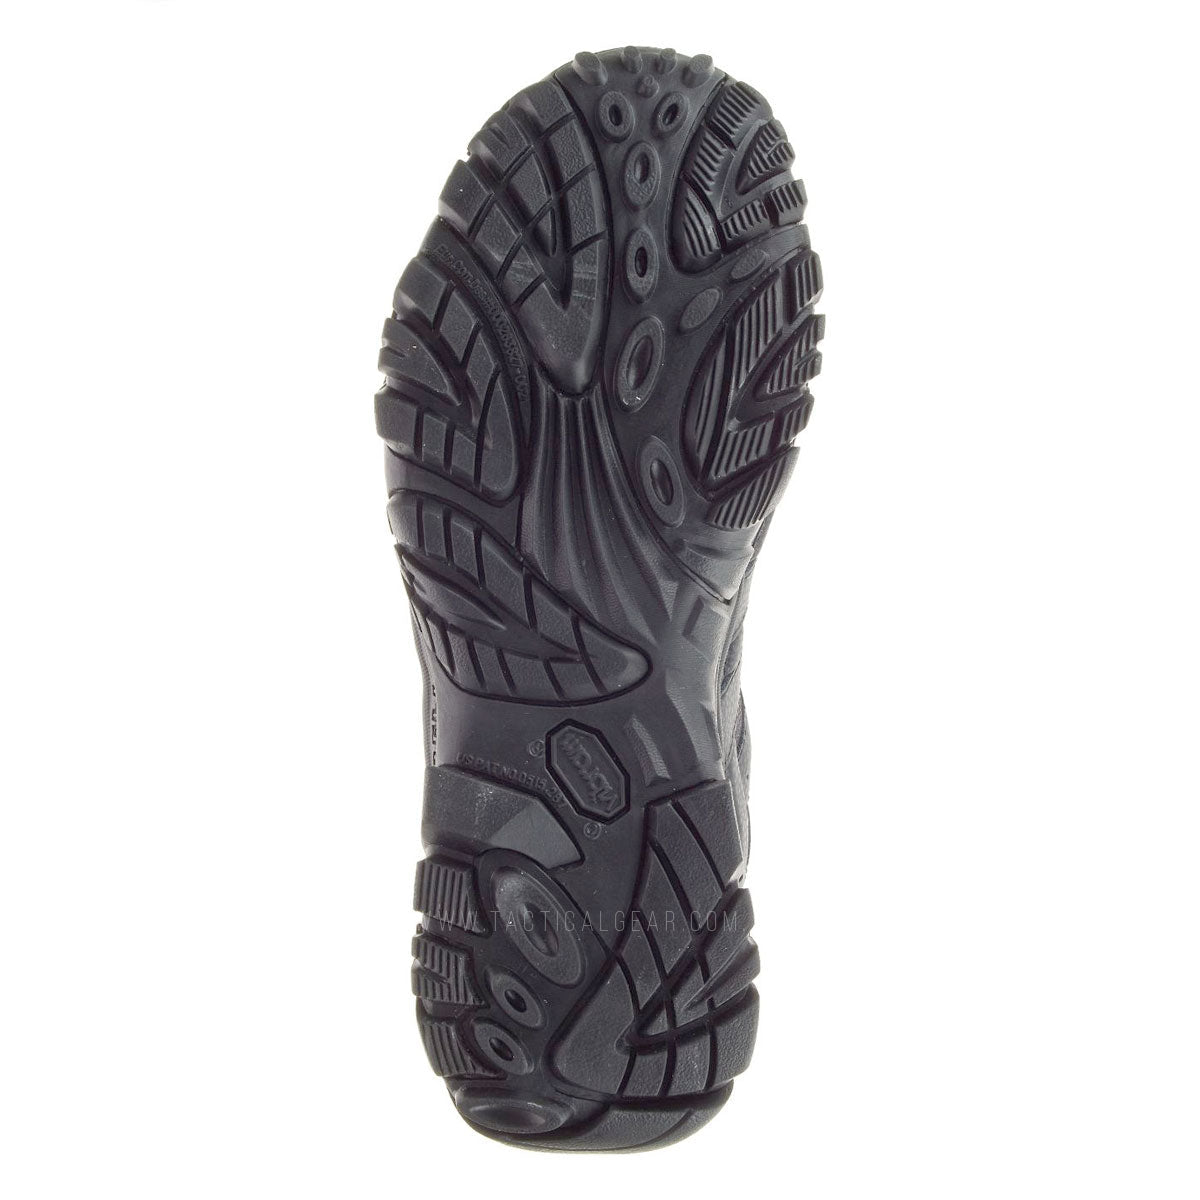 Merrell Moab 2 Mid Tactical Waterproof Boots Black Footwear Merrell Tactical Tactical Gear Supplier Tactical Distributors Australia